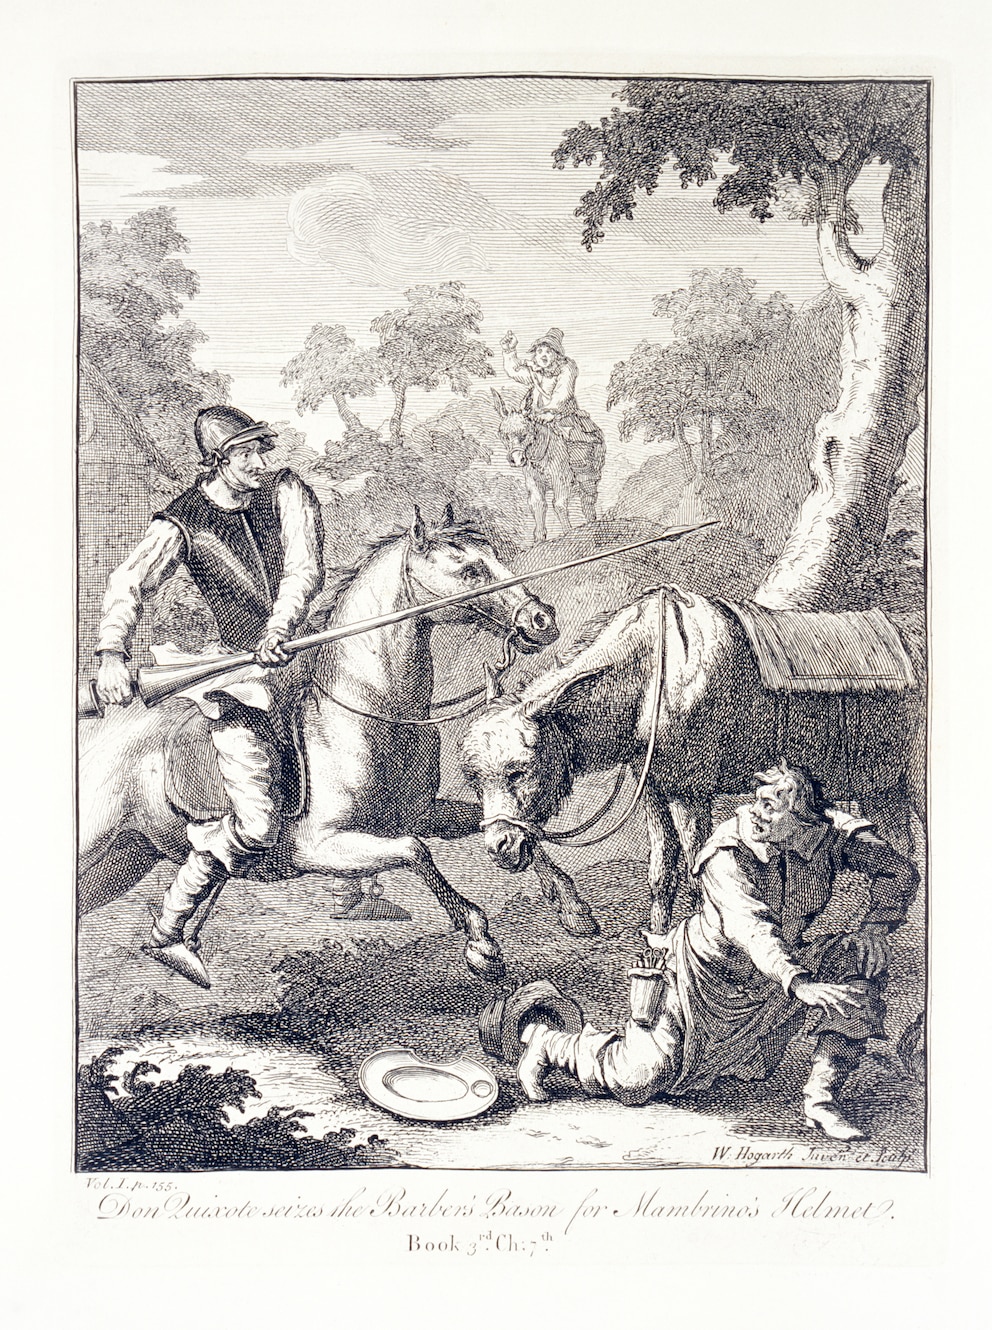 Don Quixote sitzt auf Rosinante und greift einen Baum an